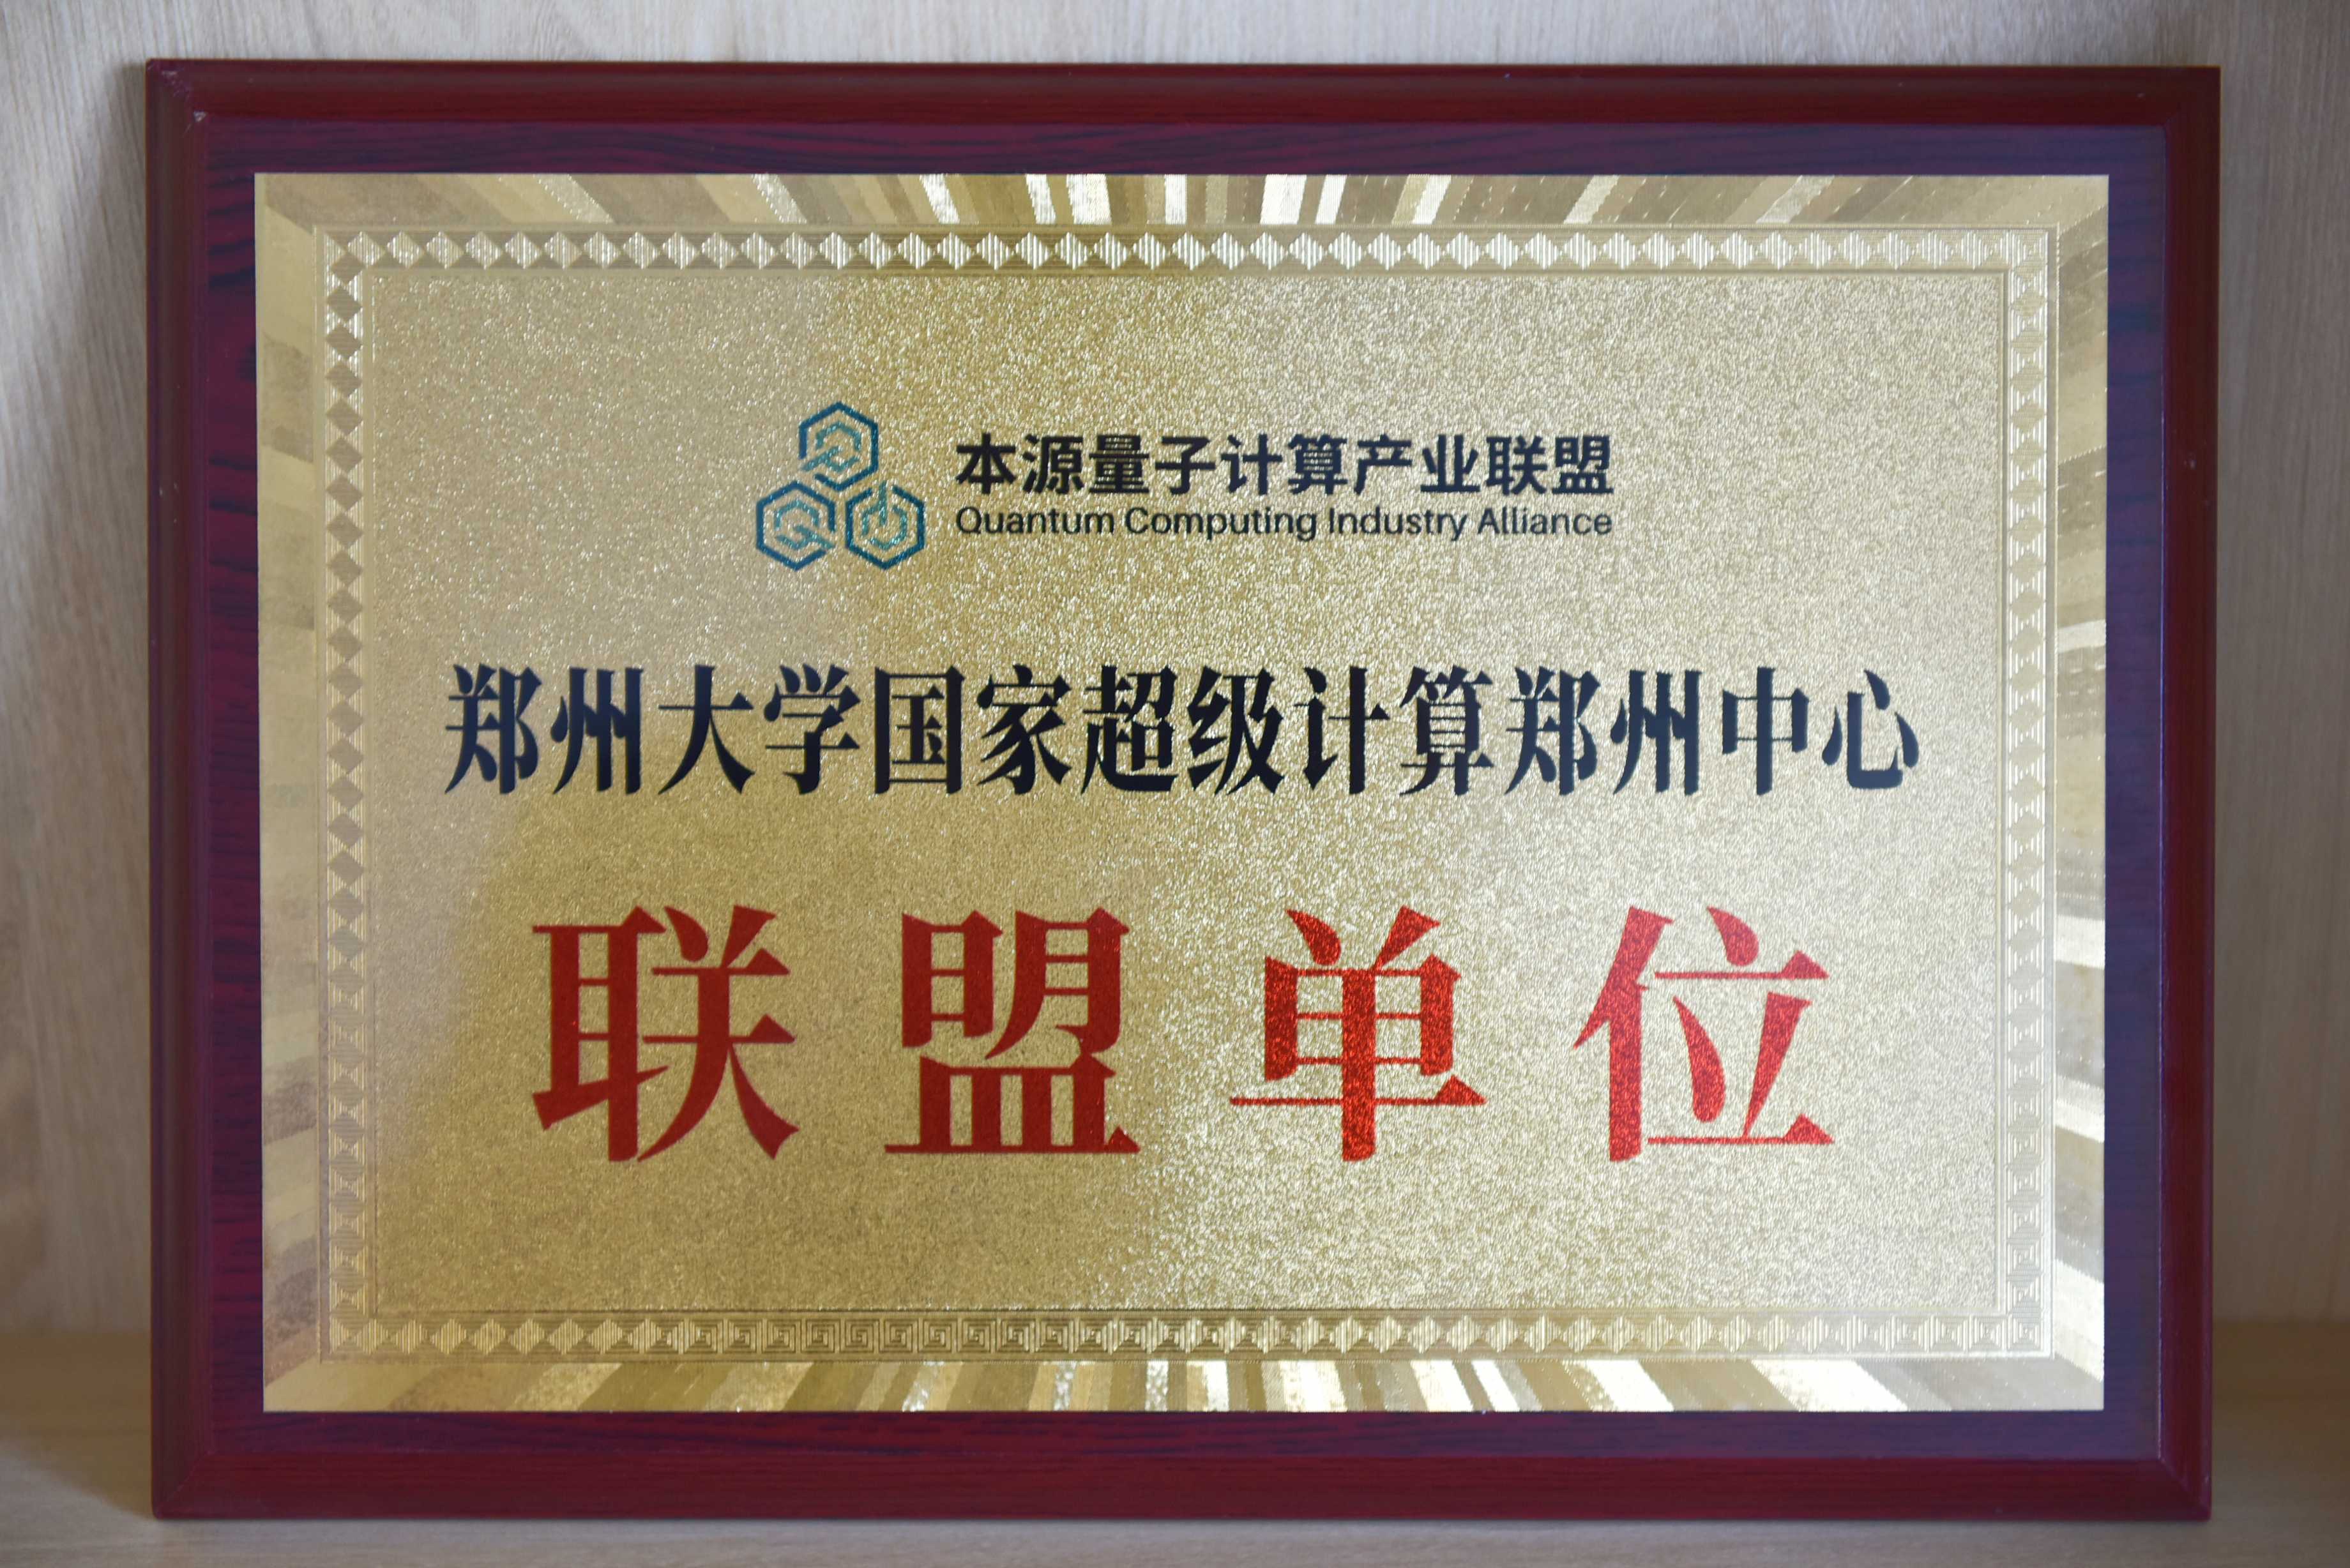 2023.05.21国家超级计算郑州中心加入中国首个量子计算产业联盟.jpeg